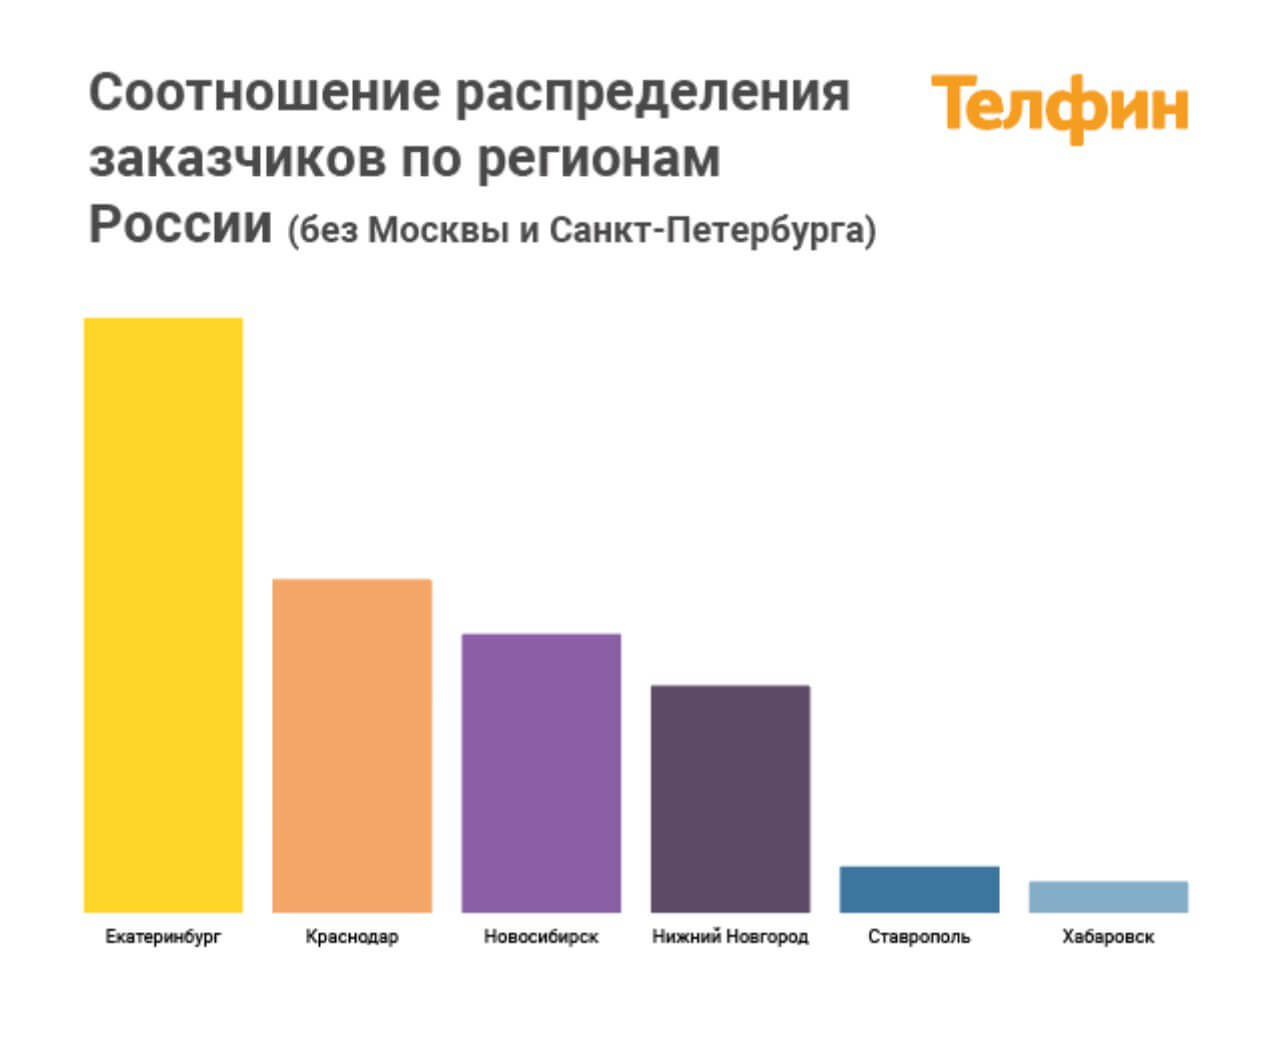 Соотношение распределения заказчиков по регионам России (без Москвы и Санкт-Петербурга)